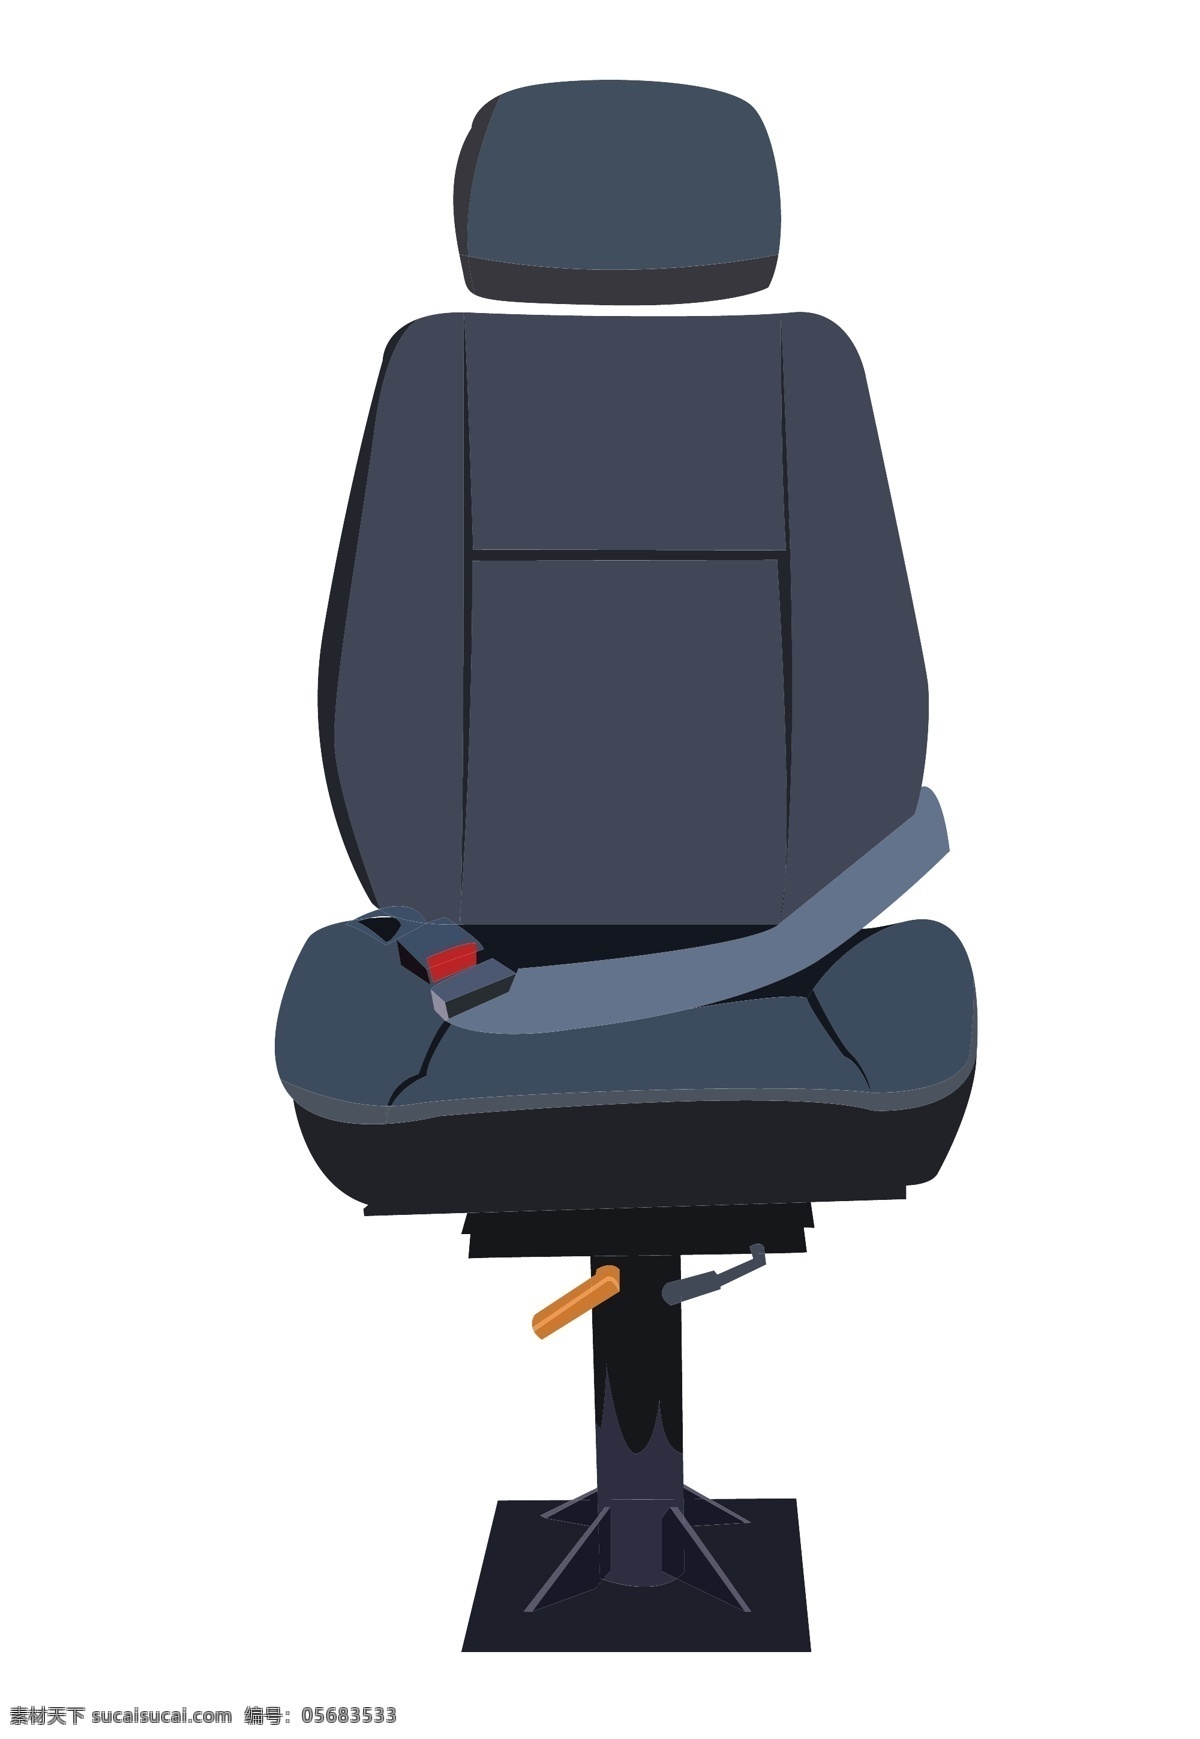 黑色 座椅 装饰 插画 黑色的座椅 汽车座椅 漂亮的座椅 座椅装饰 座椅插画 立体座椅 卡通座椅